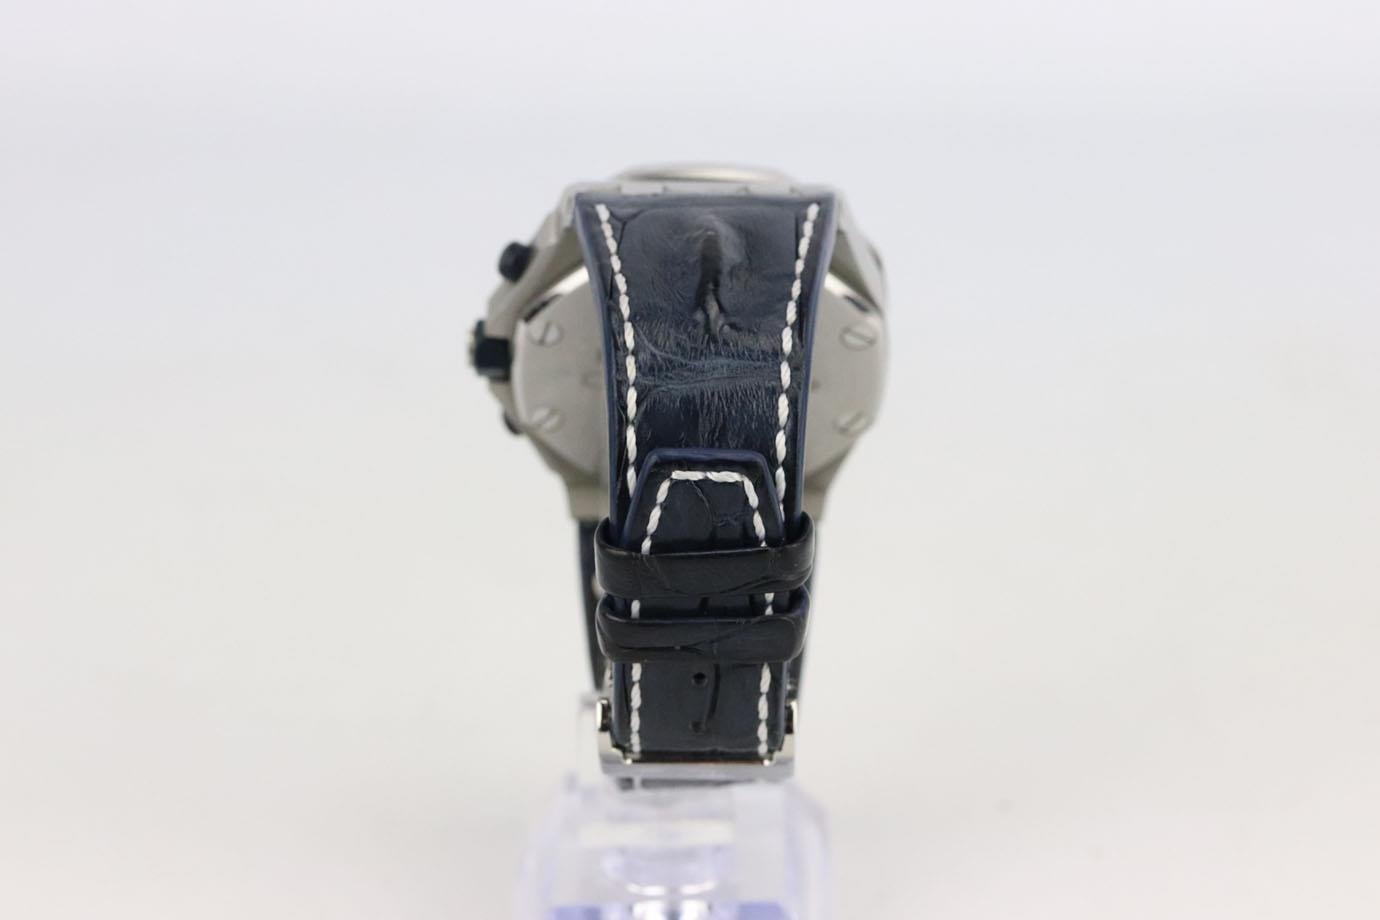 Gray Audemar Piguet Royal Oak Offshore Chronograph 42mm Navy Model Wrist Watch